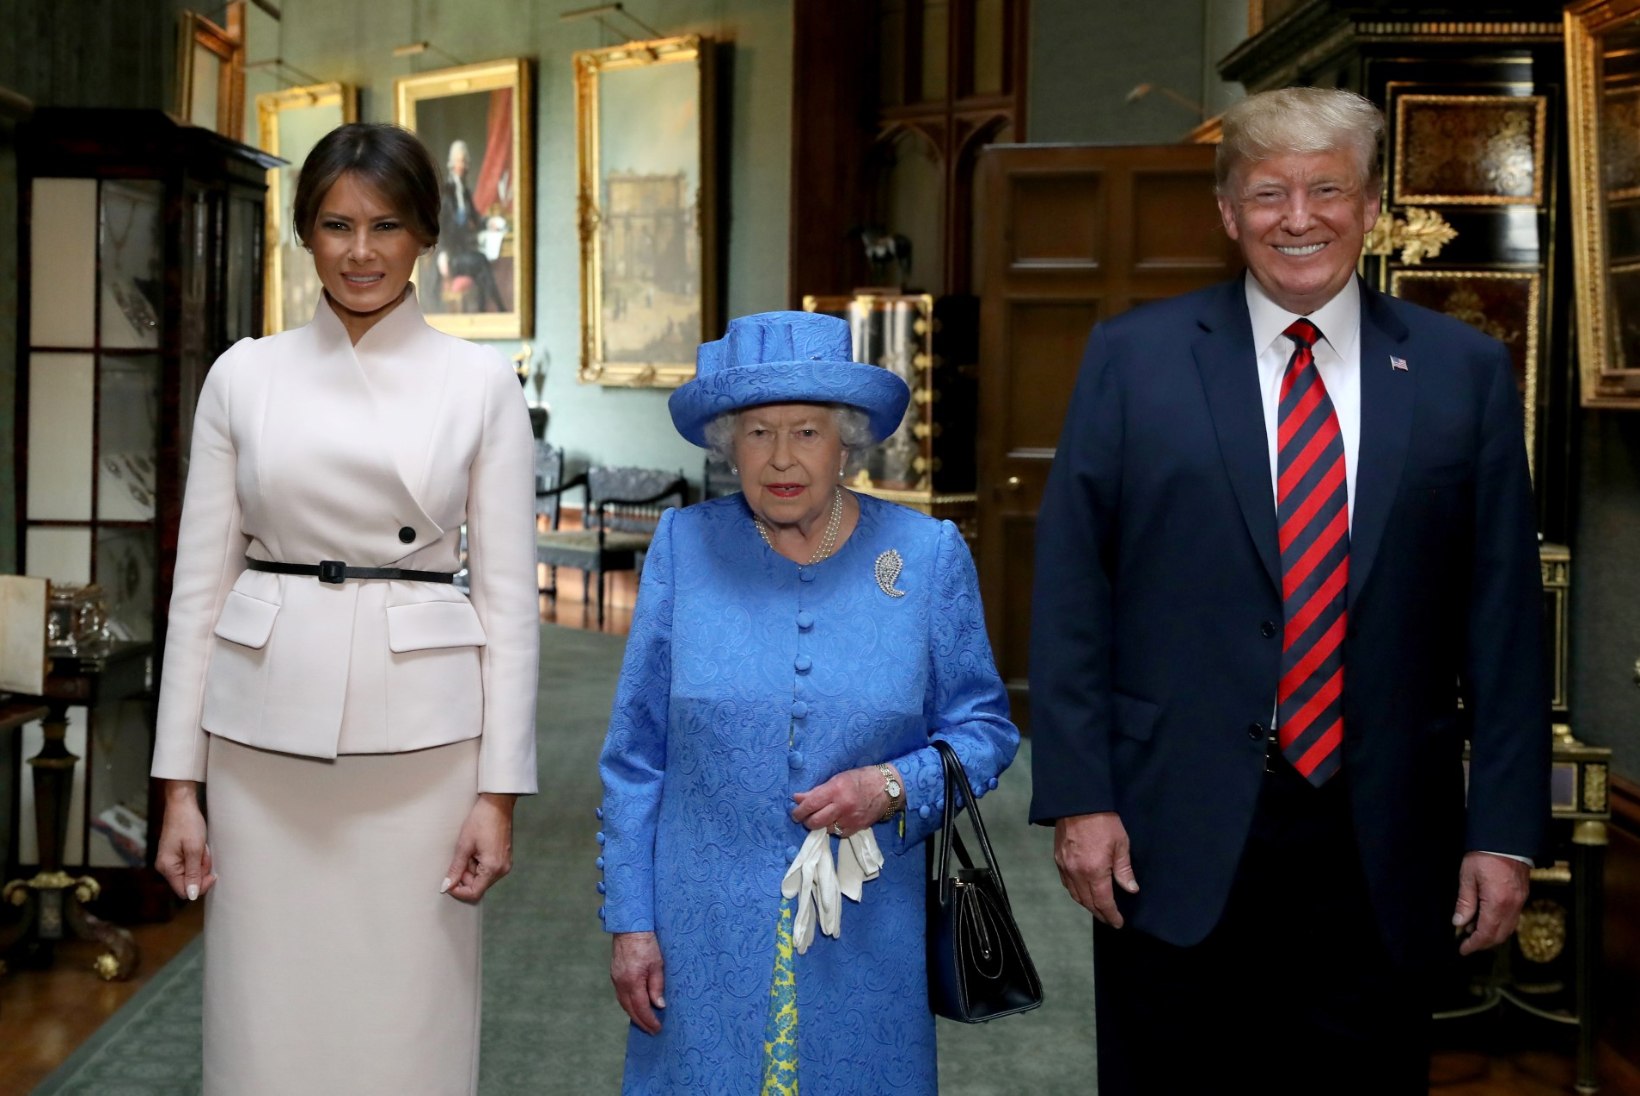 FOTOD | Trump ja Elizabeth II jõid üheskoos kella viie teed